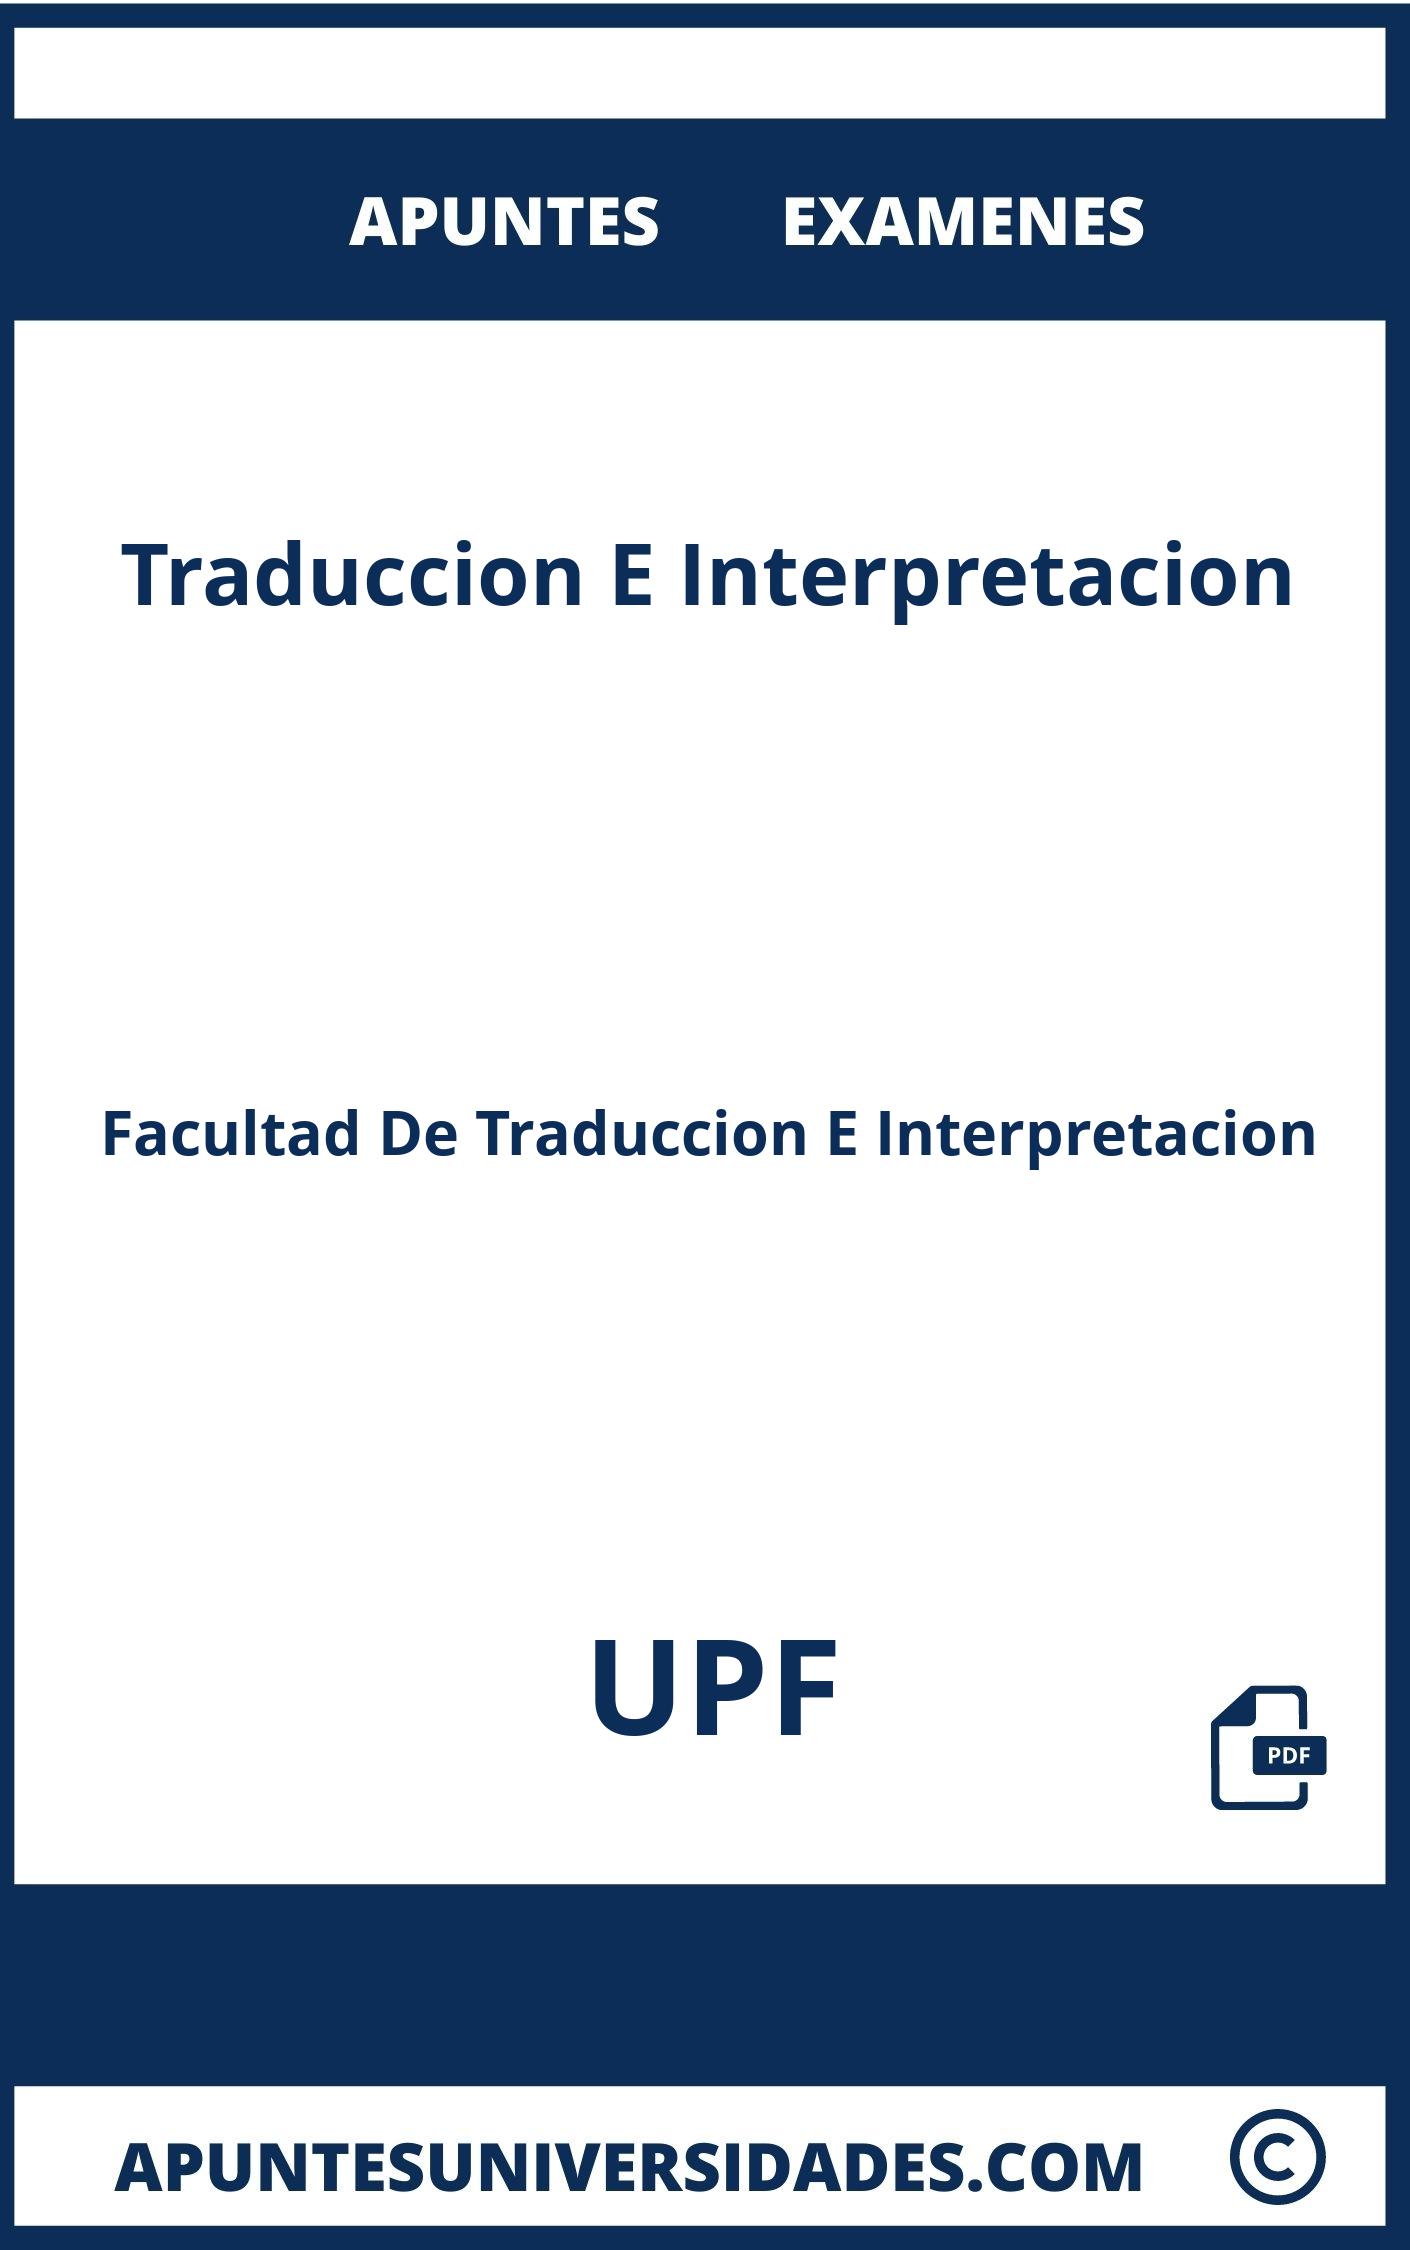 Examenes y Apuntes Traduccion E Interpretacion UPF